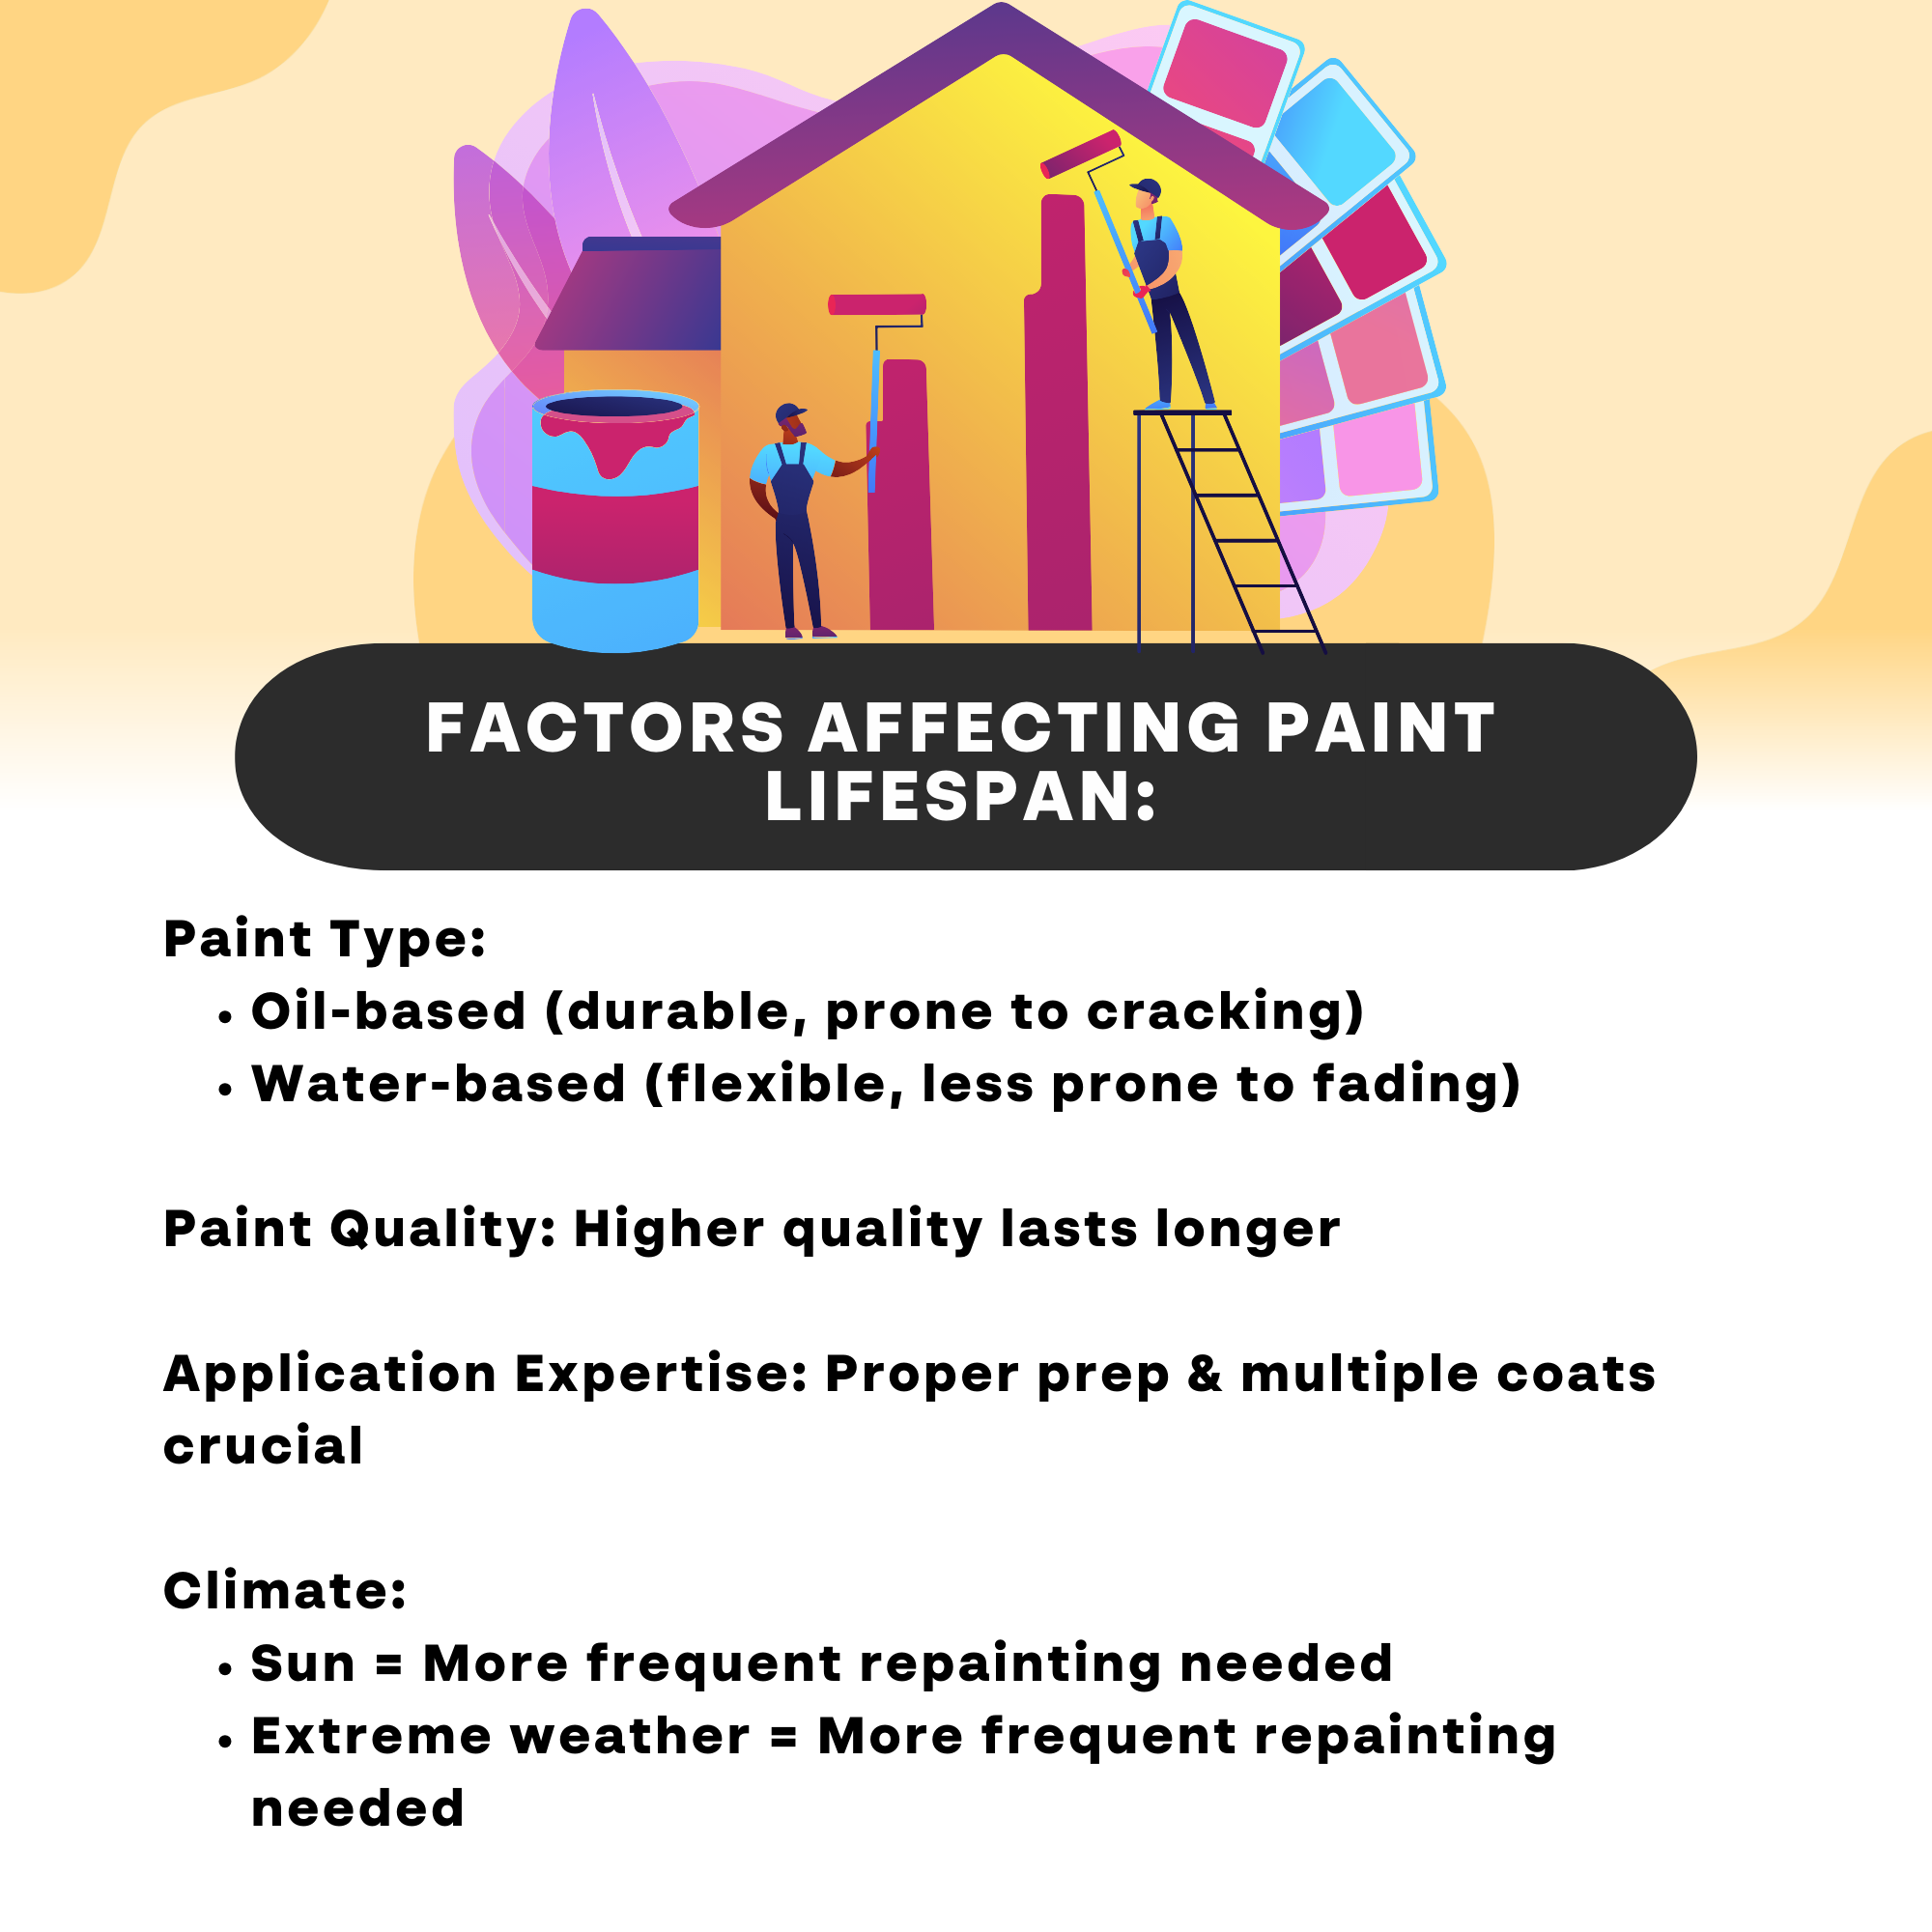 Factors Affecting Paint Lifespan